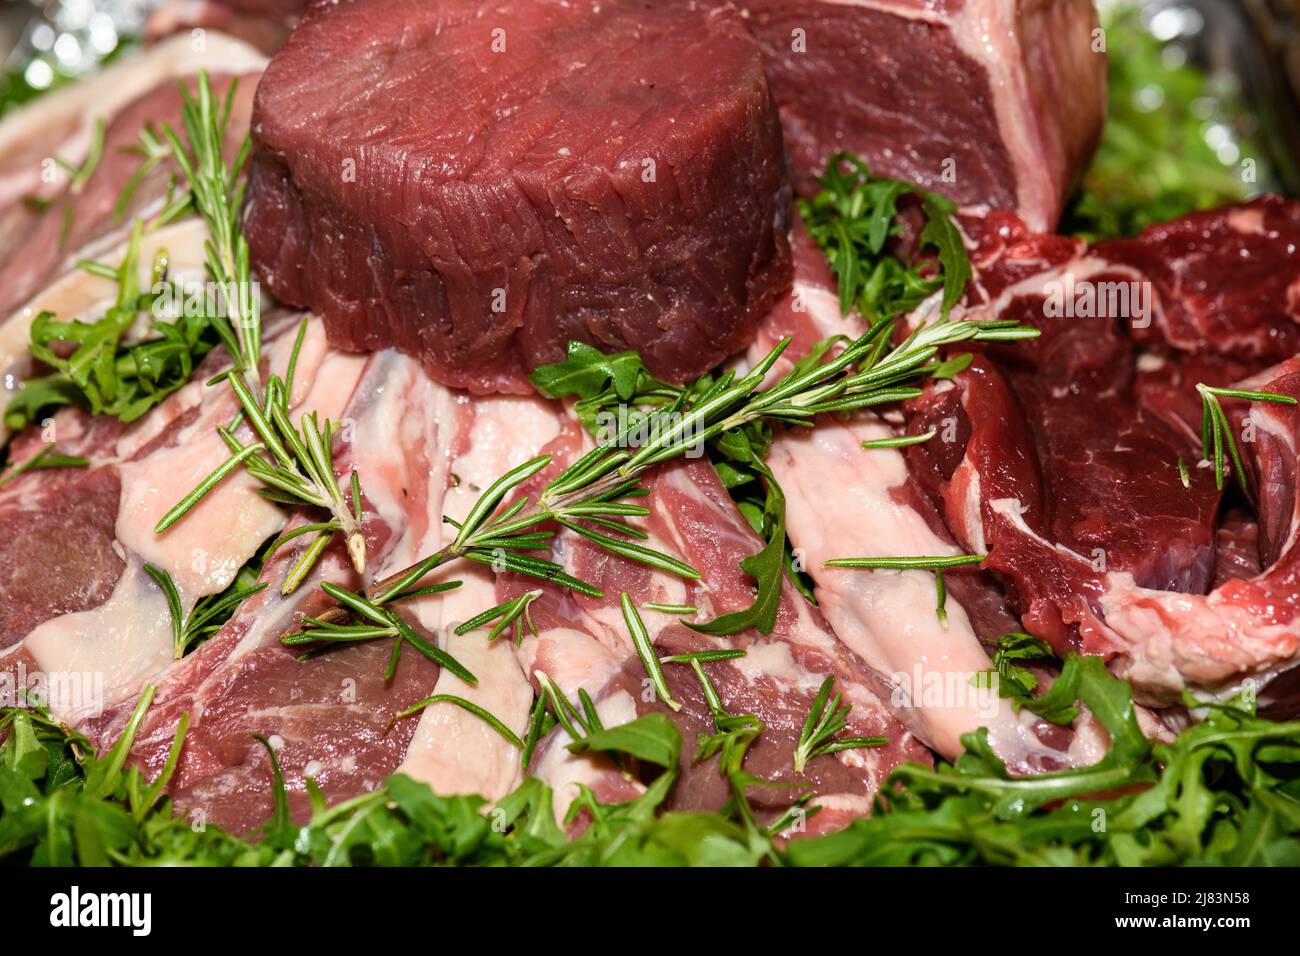 Foodfotografie, Auswahl an verschiedenen rohem Fleisch wie Steak und Kotelette Stock Photo